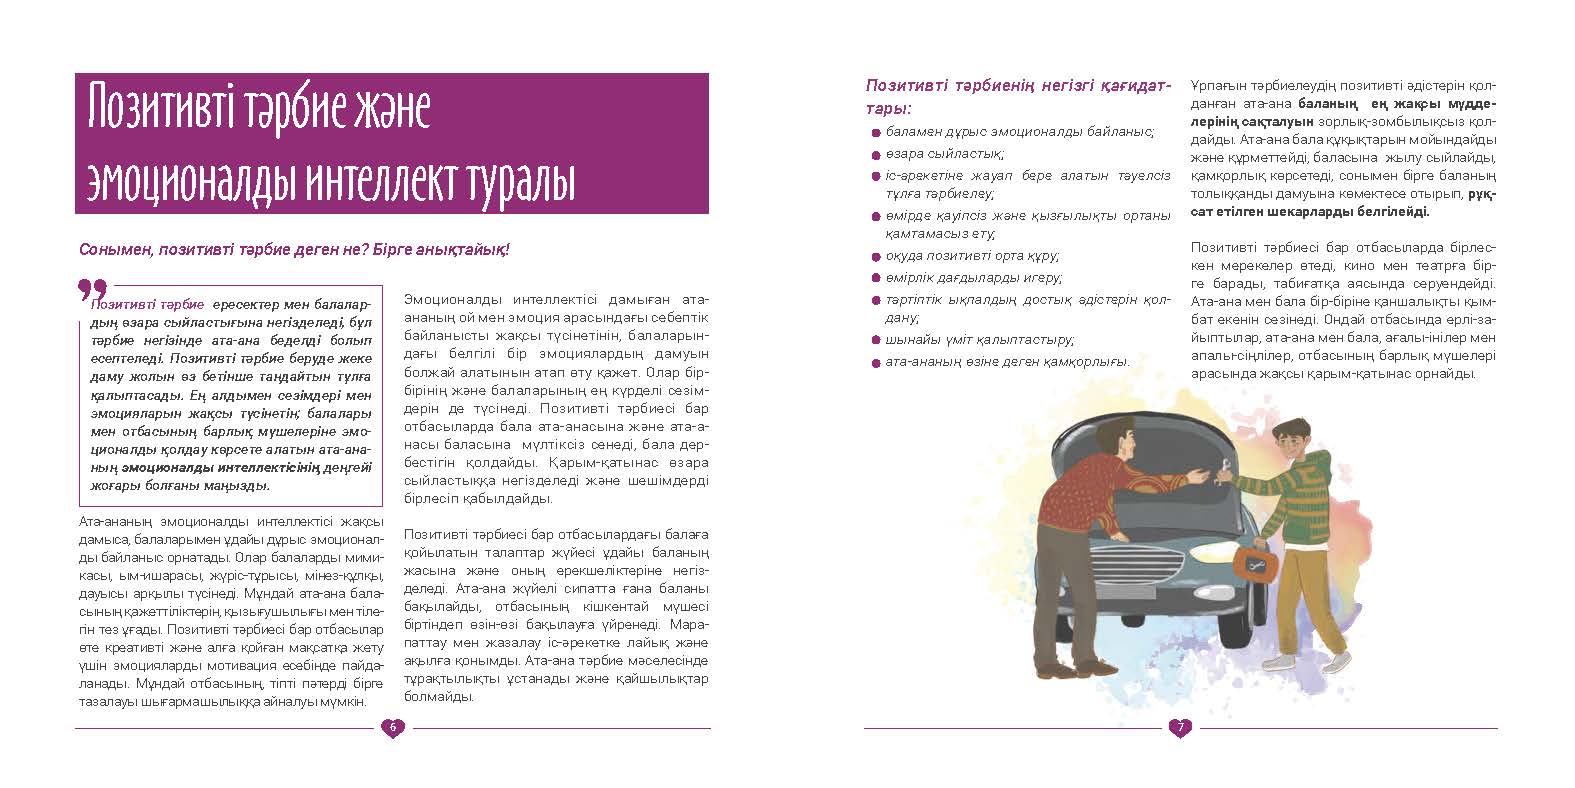 EVAC brochure KAZ (4).jpg